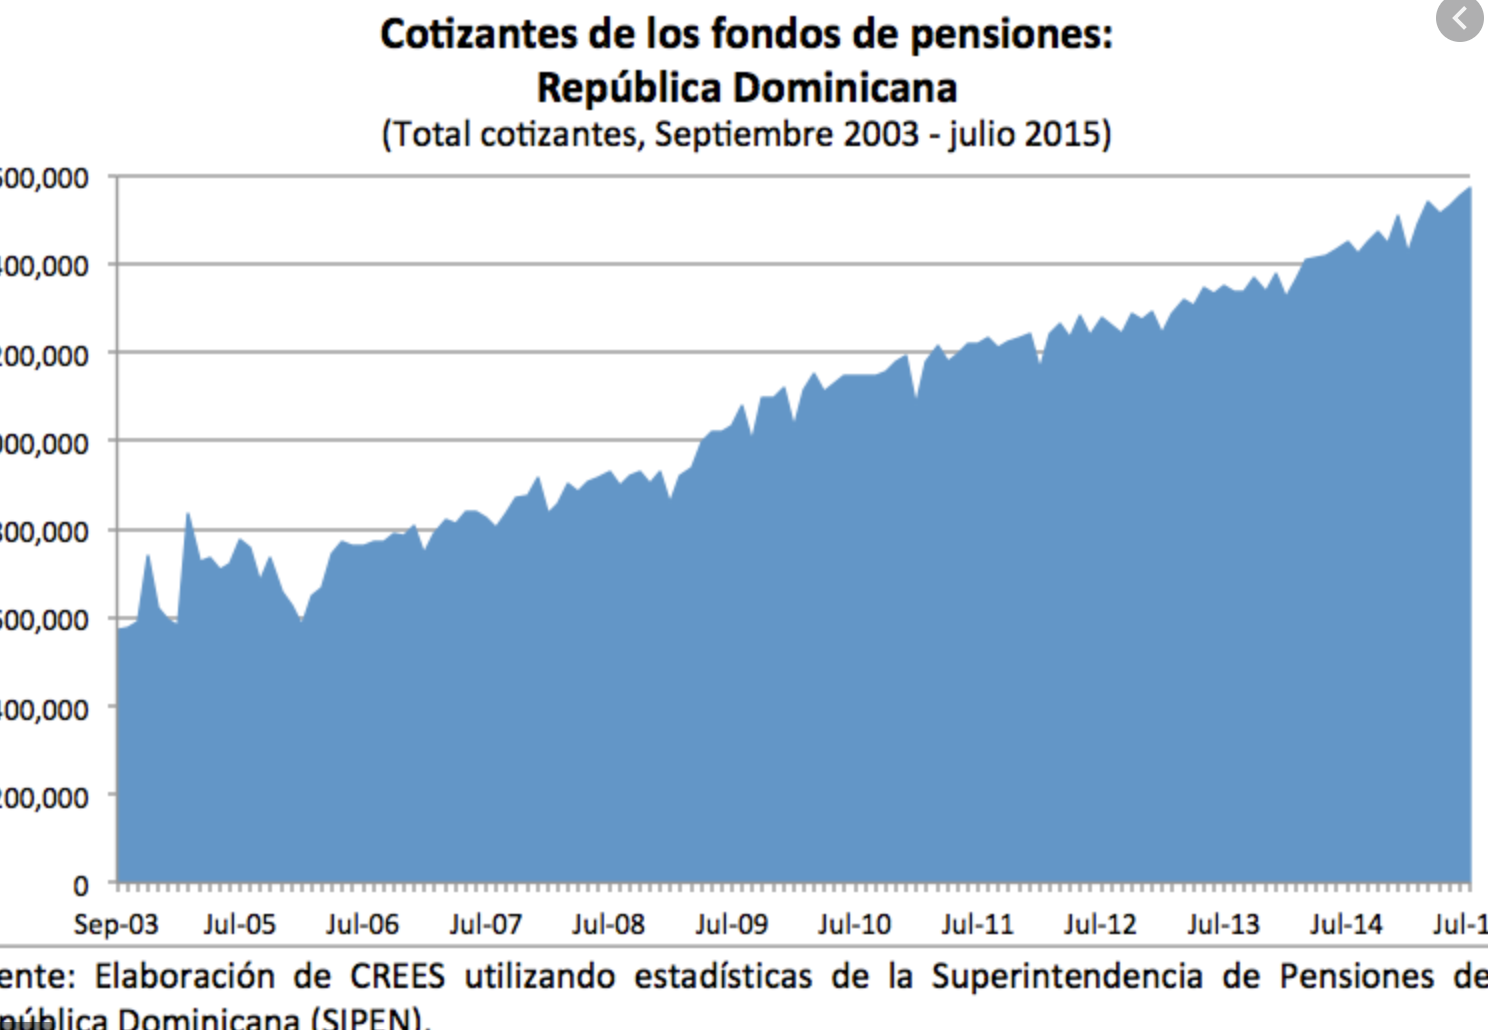 Los fondos de pensiones en República Dominicana